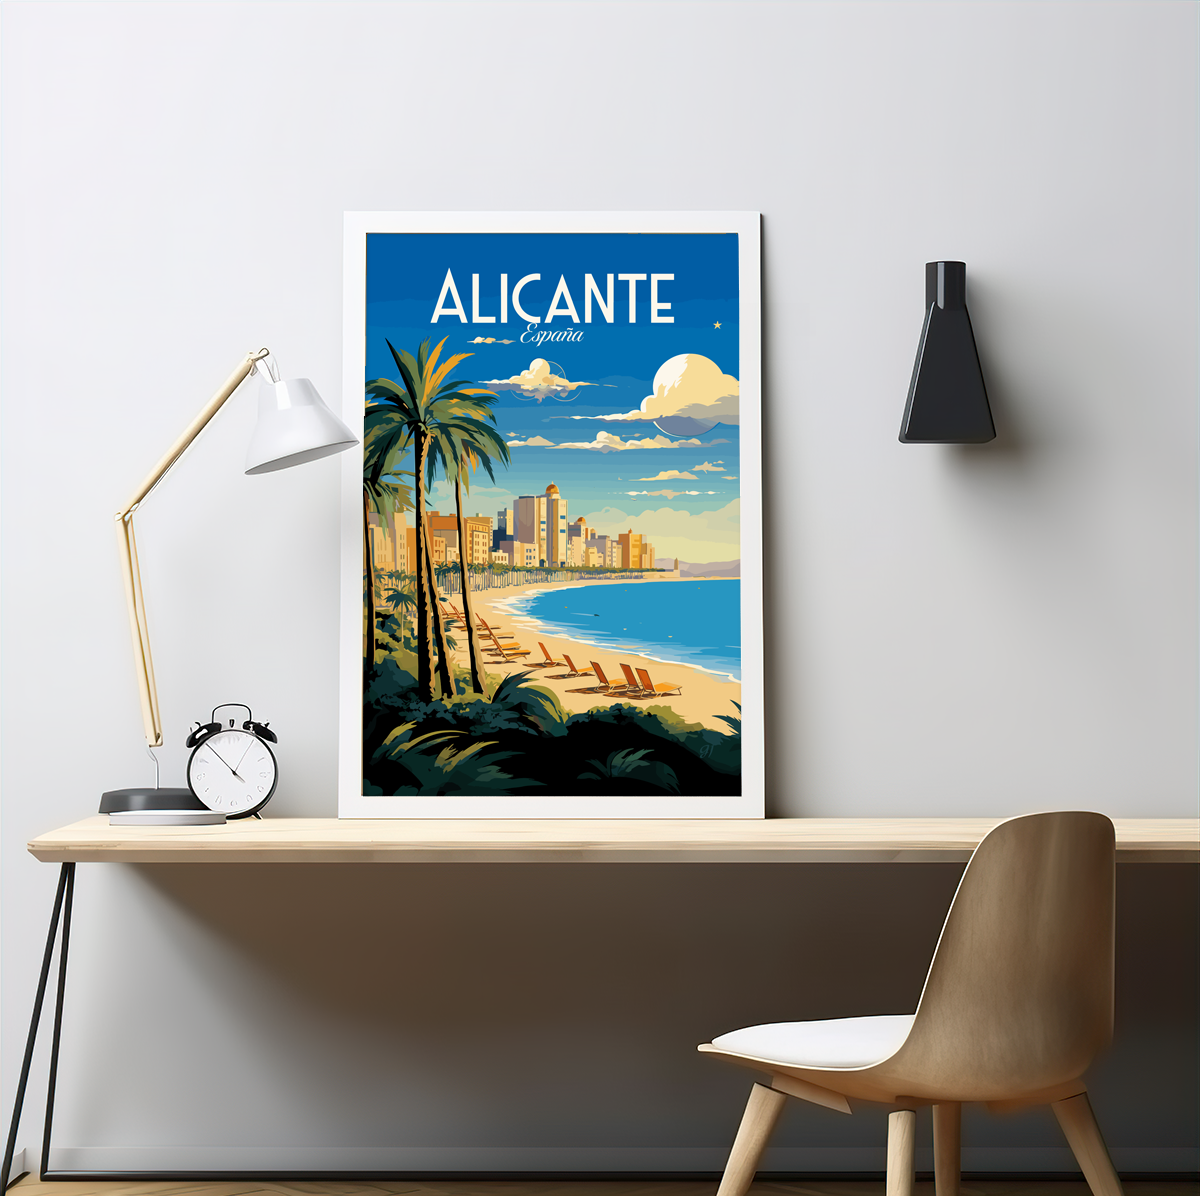 Alicante poster by bon voyage design